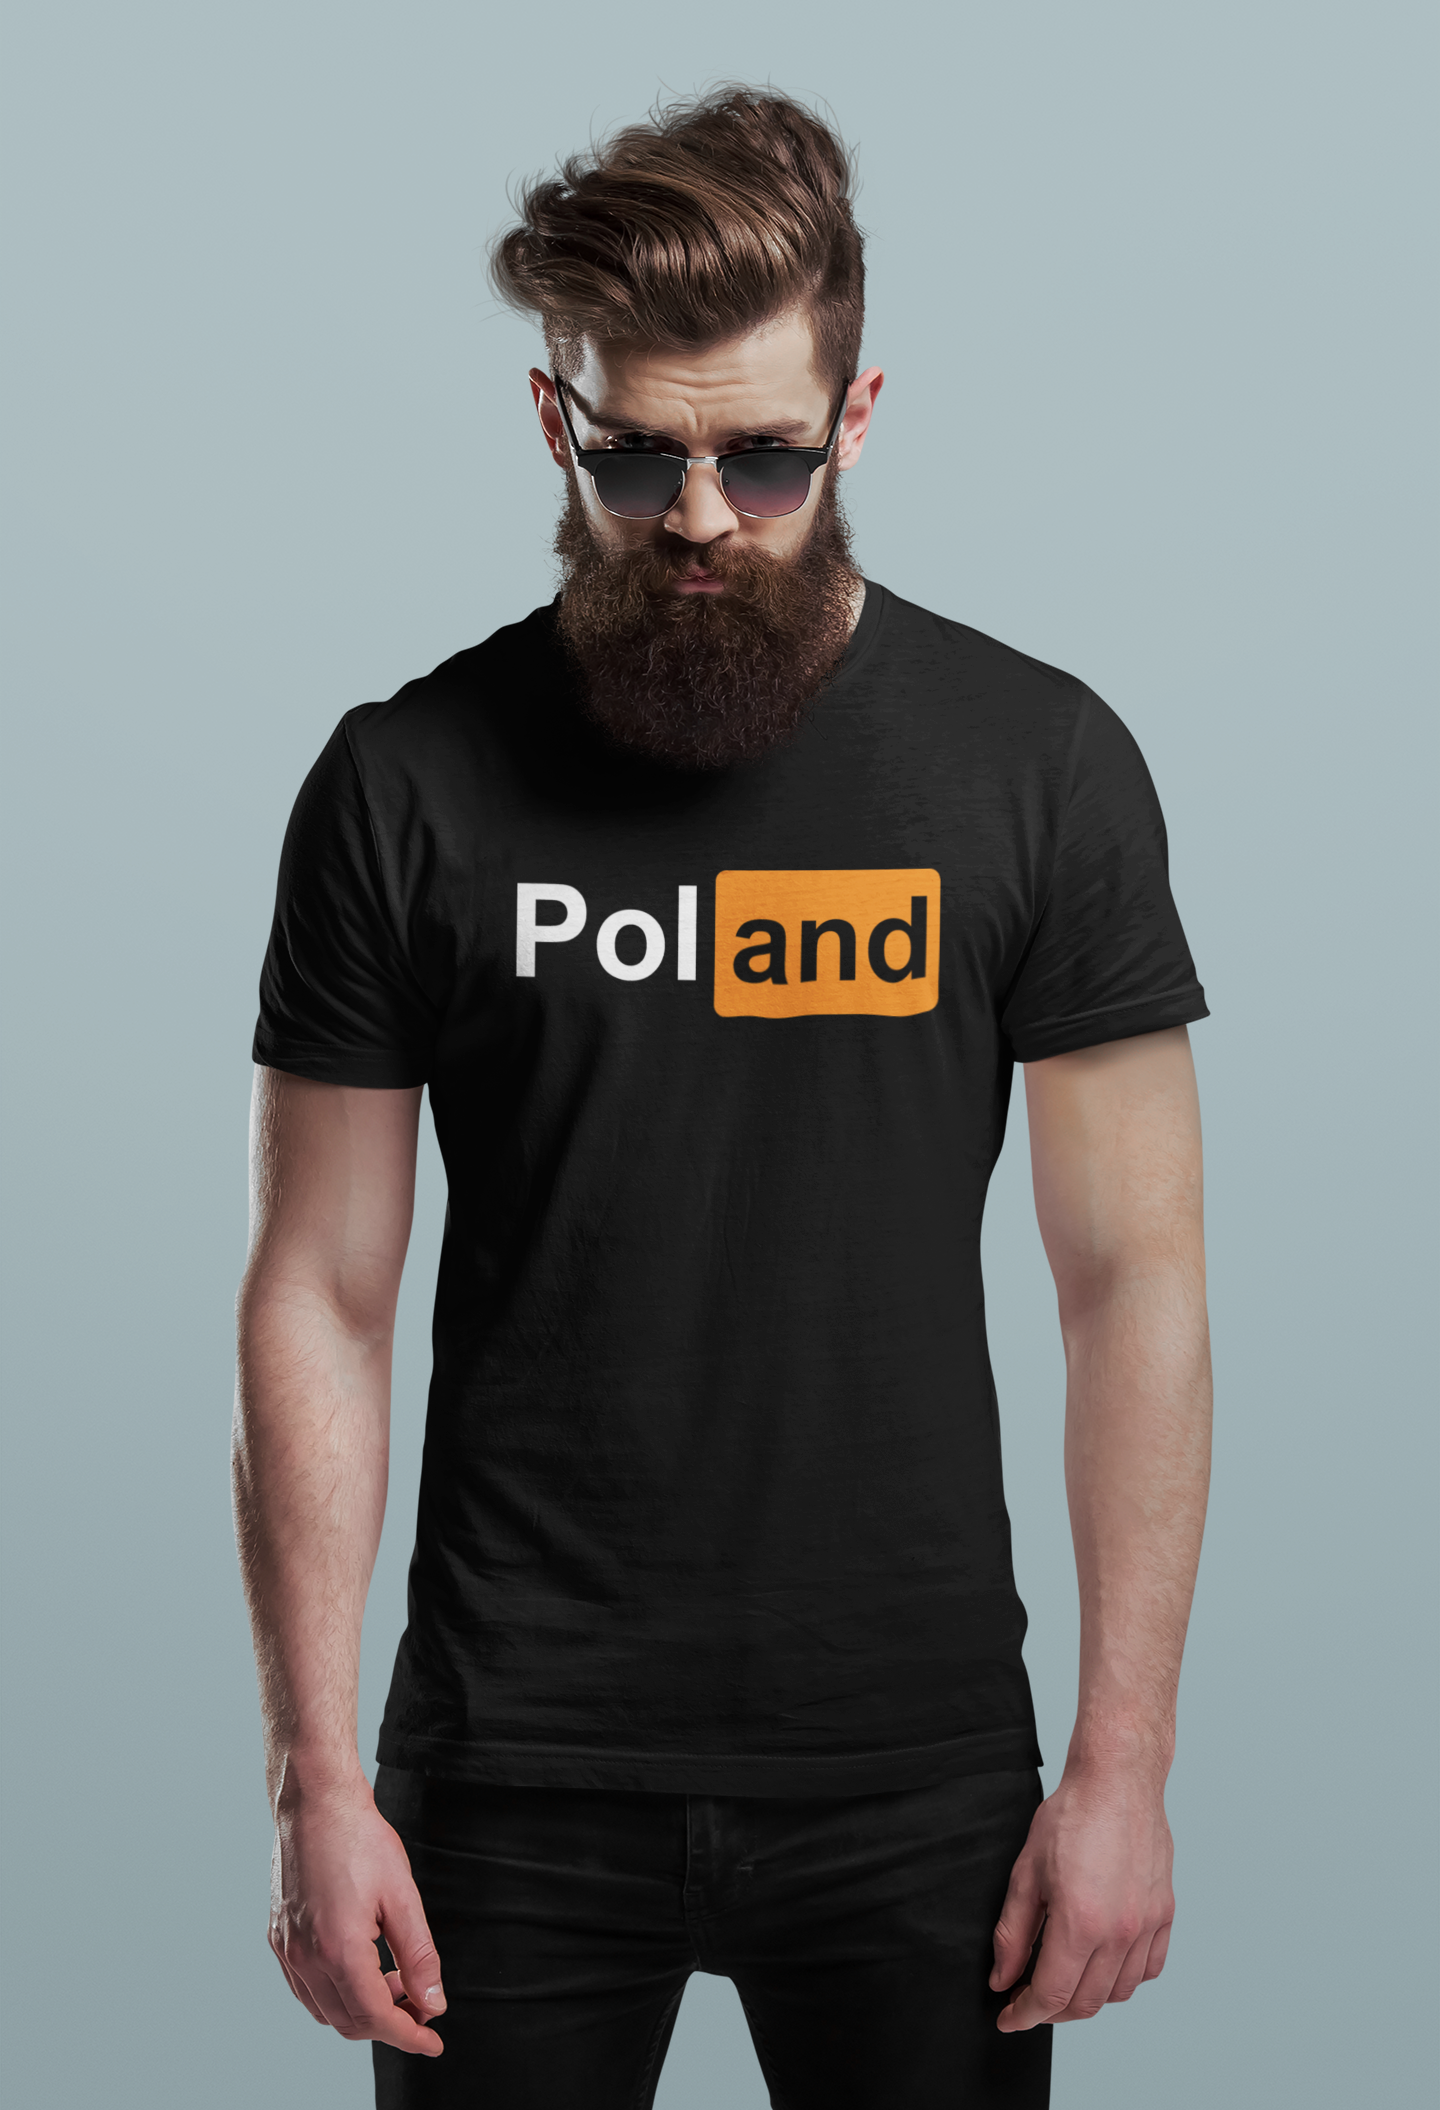 PolAnd - koszulka patriotyczna ... prawie